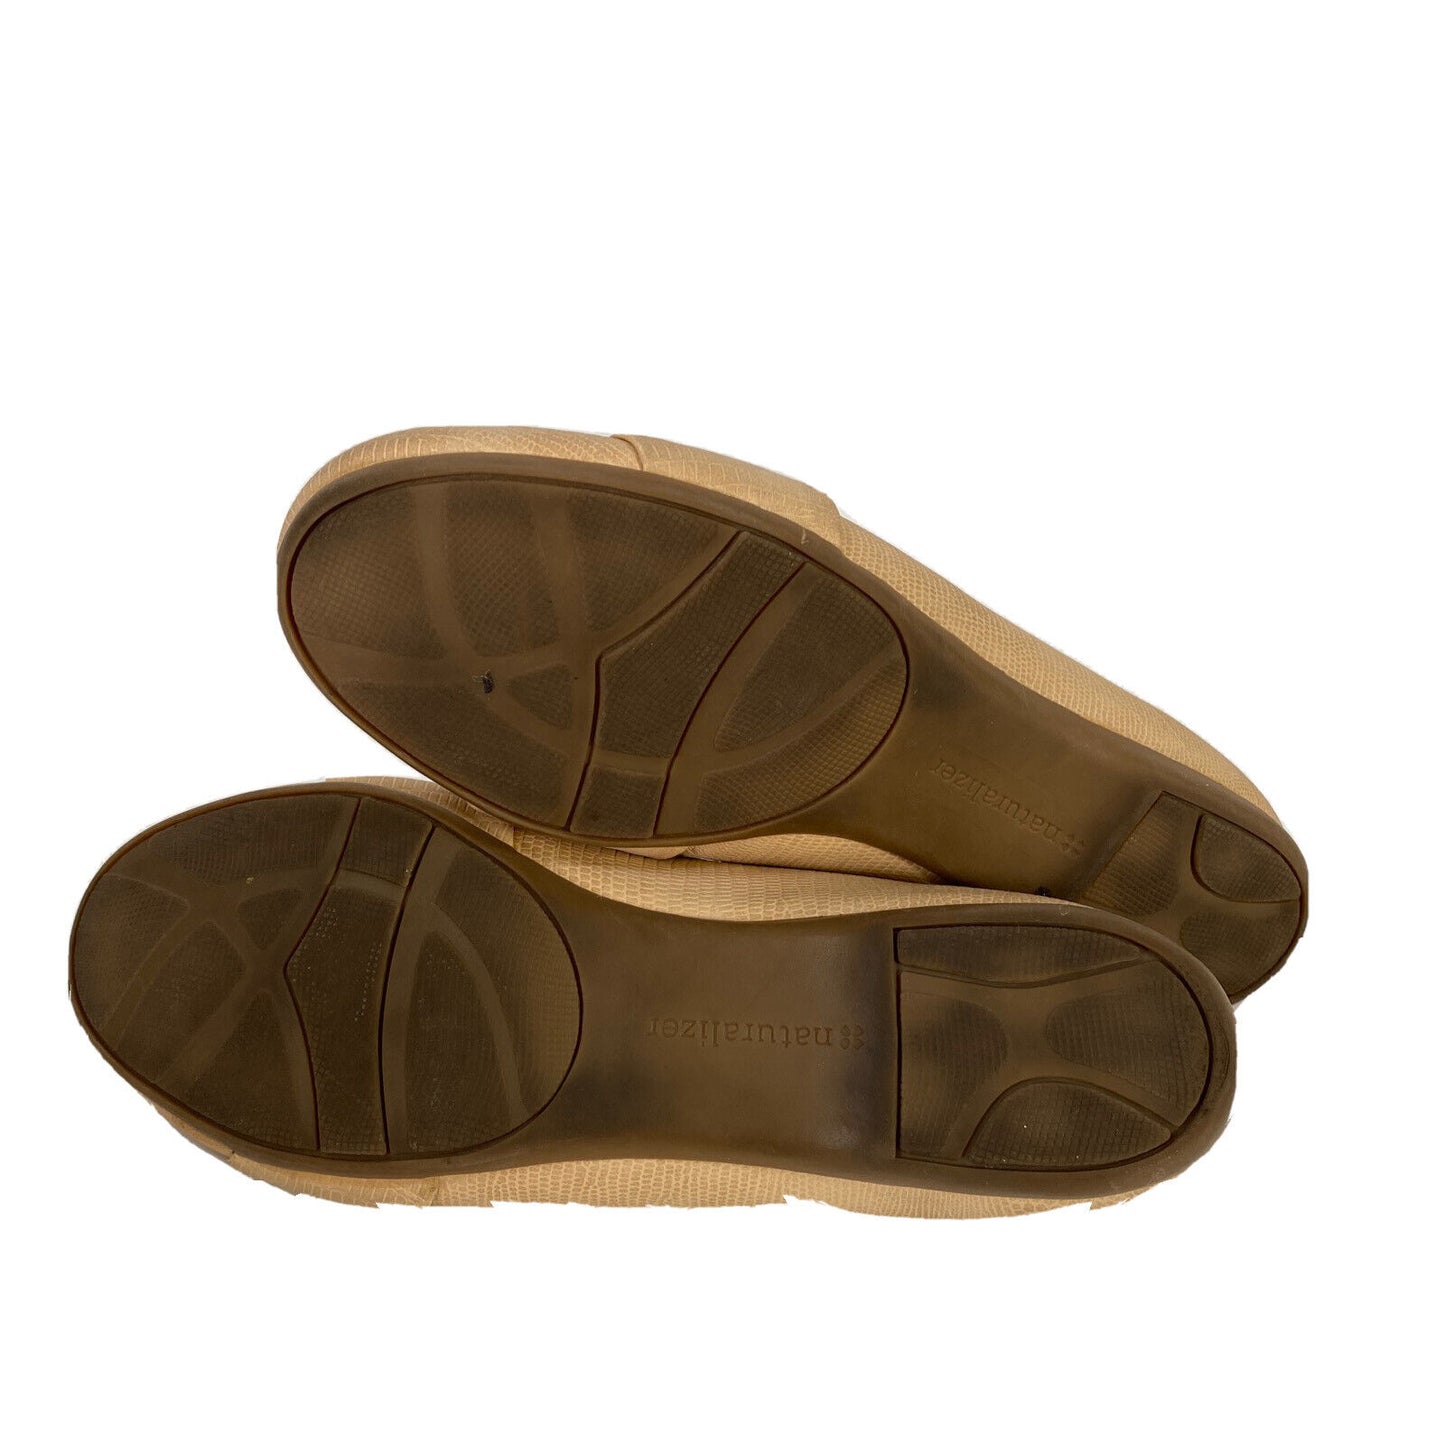 Zapatos planos Rheis con diamantes de imitación beige de Naturalizer para mujer - 6M